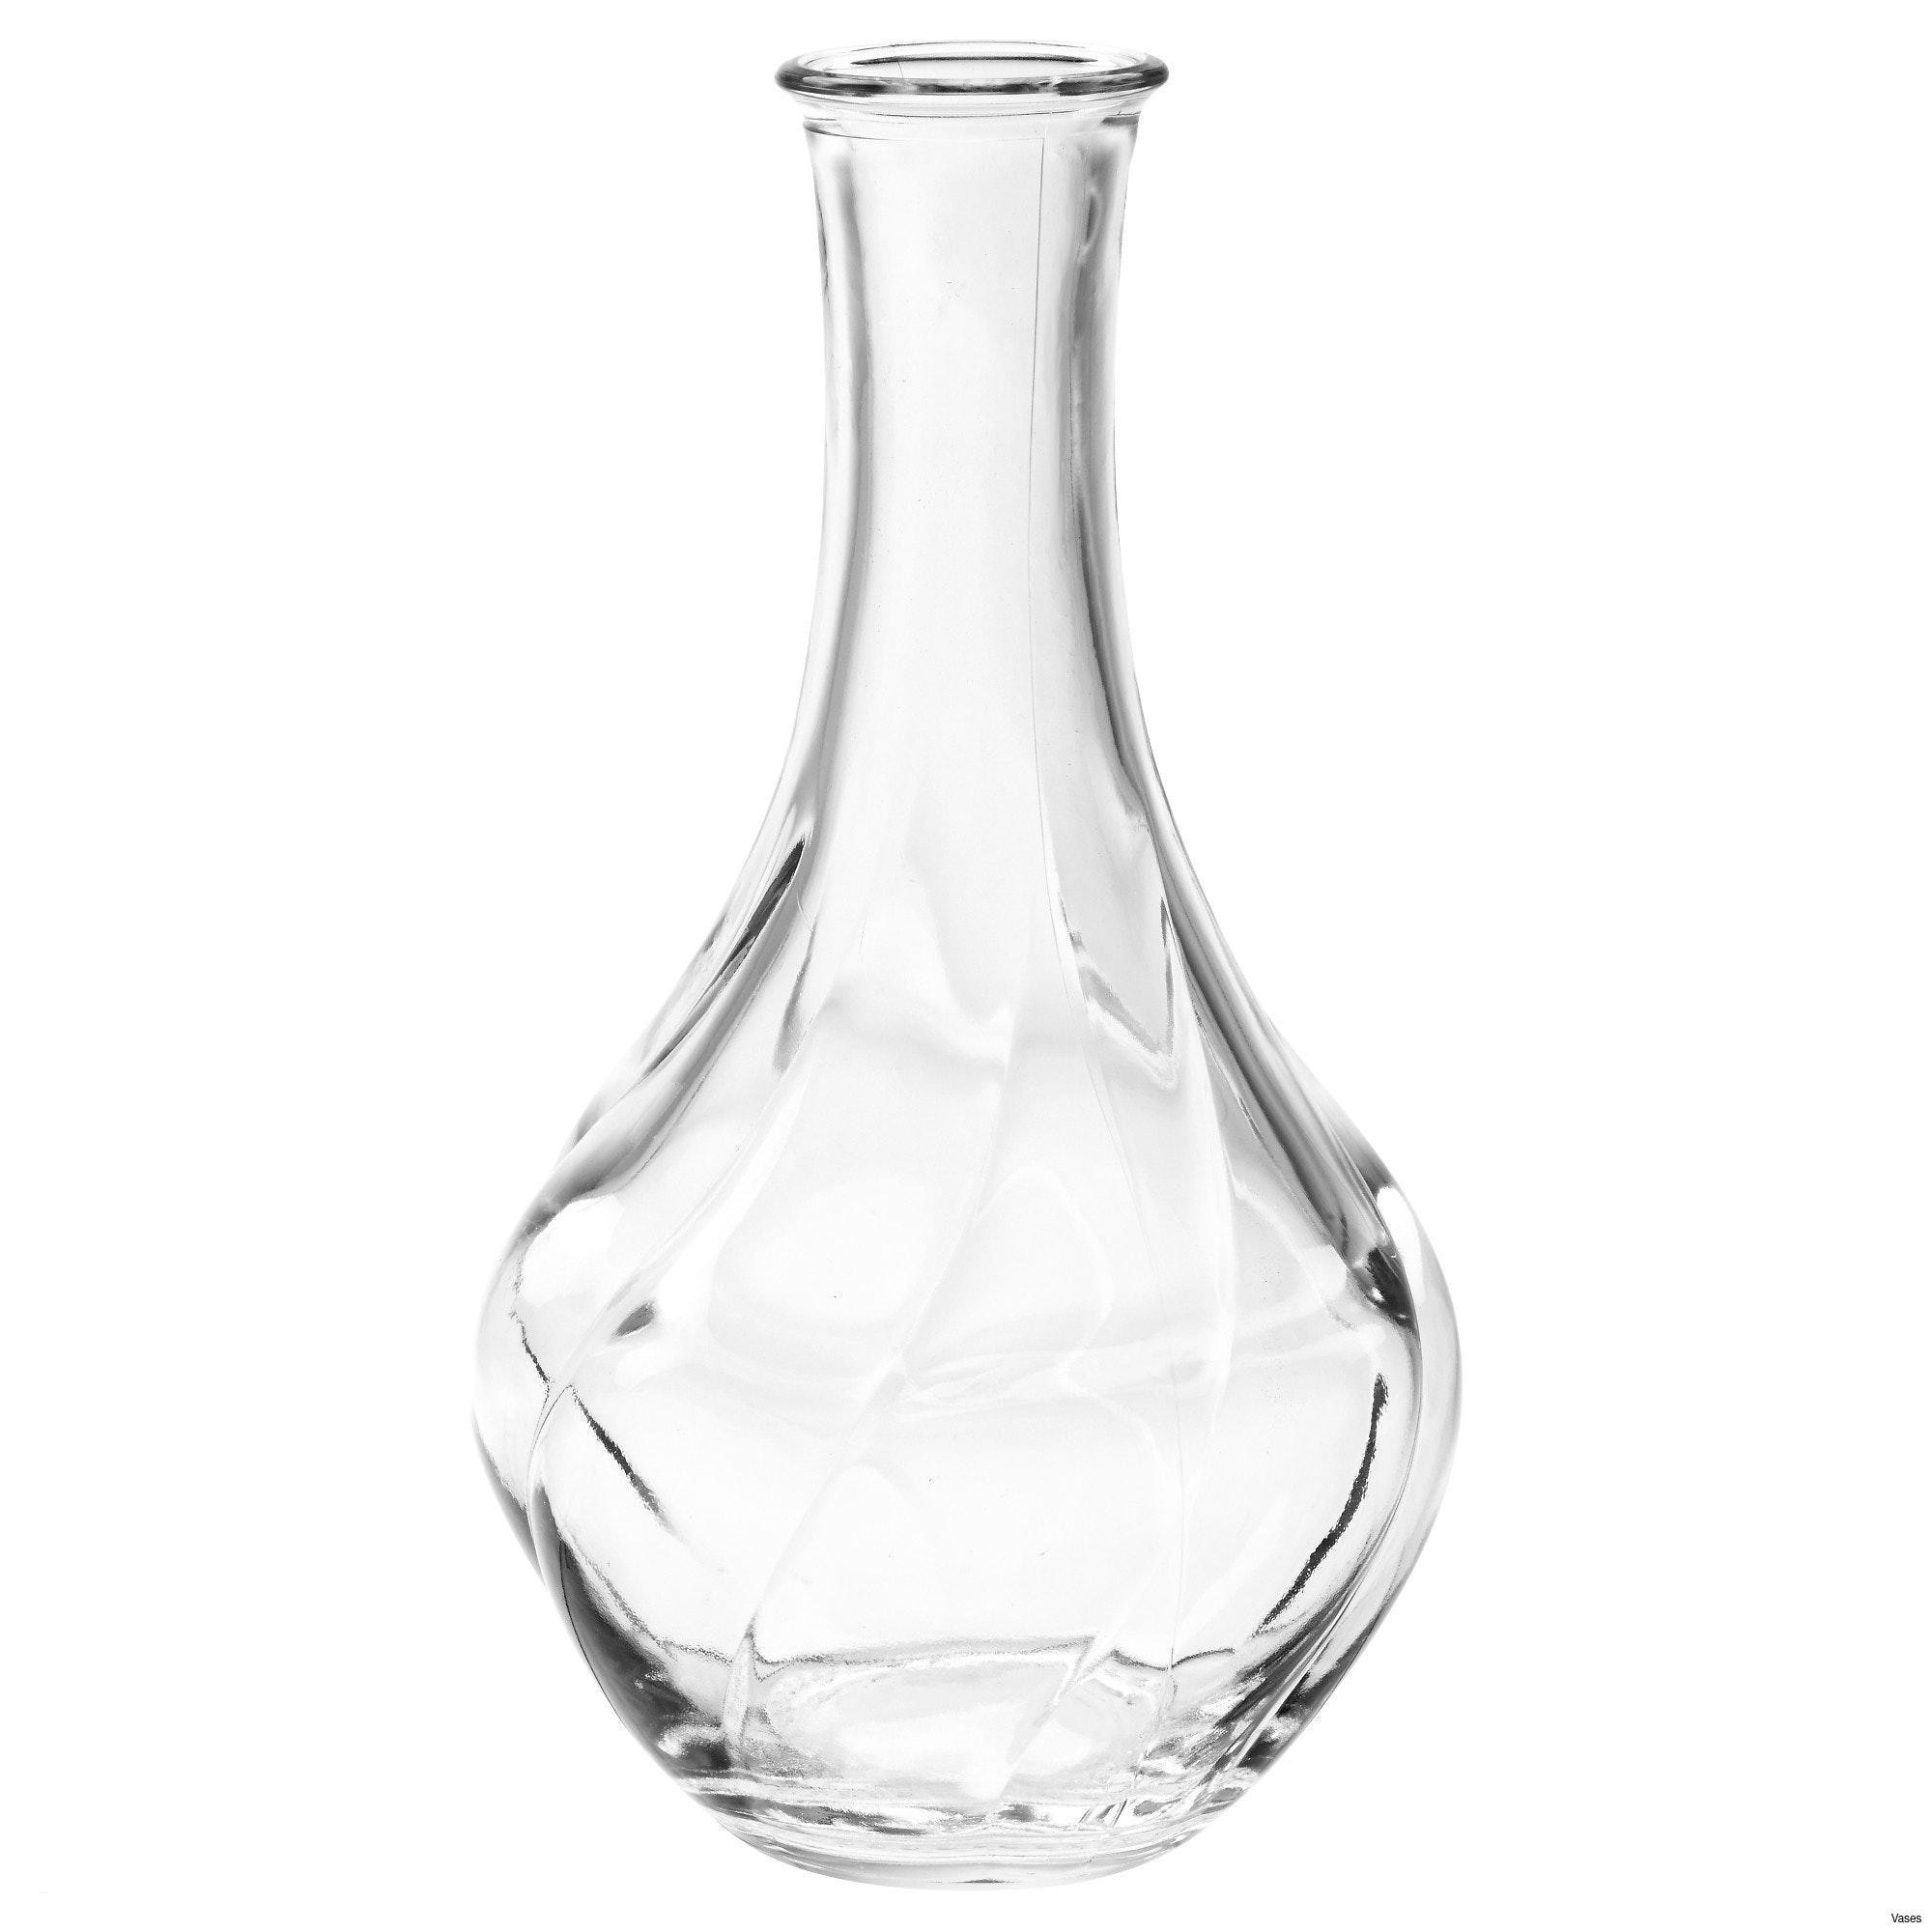 lenox vase value of white glass bowl image black and white living room cool living room throughout black and white living room cool living room glass vases fresh